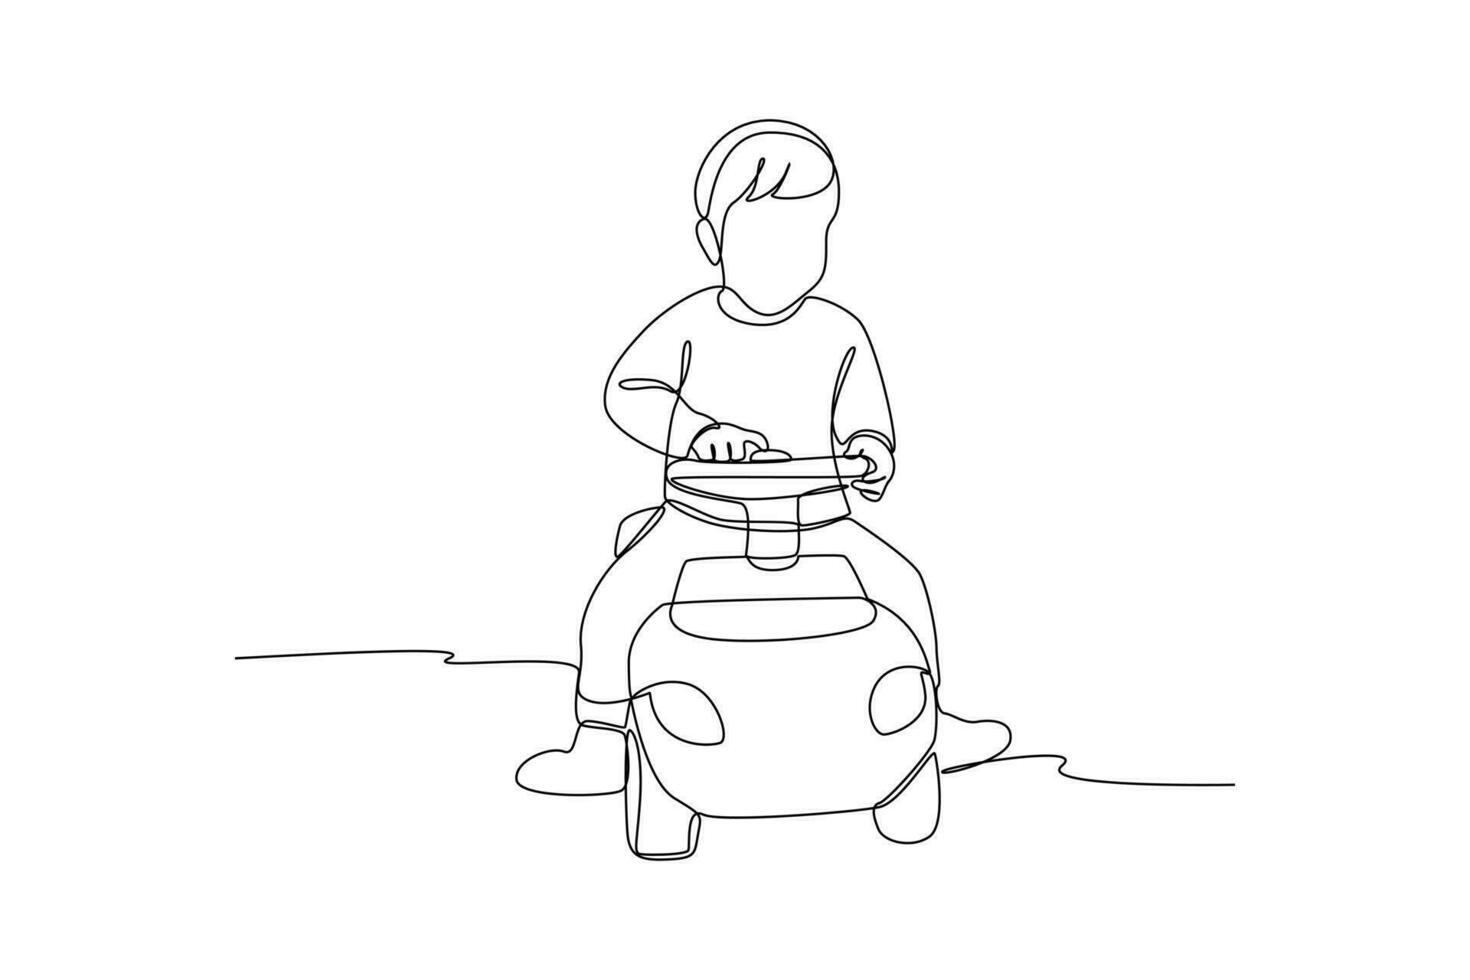 Célibataire une ligne dessin garçon conduite une jouet auto. les enfants en jouant avec jouets concept. continu ligne dessin illustration vecteur